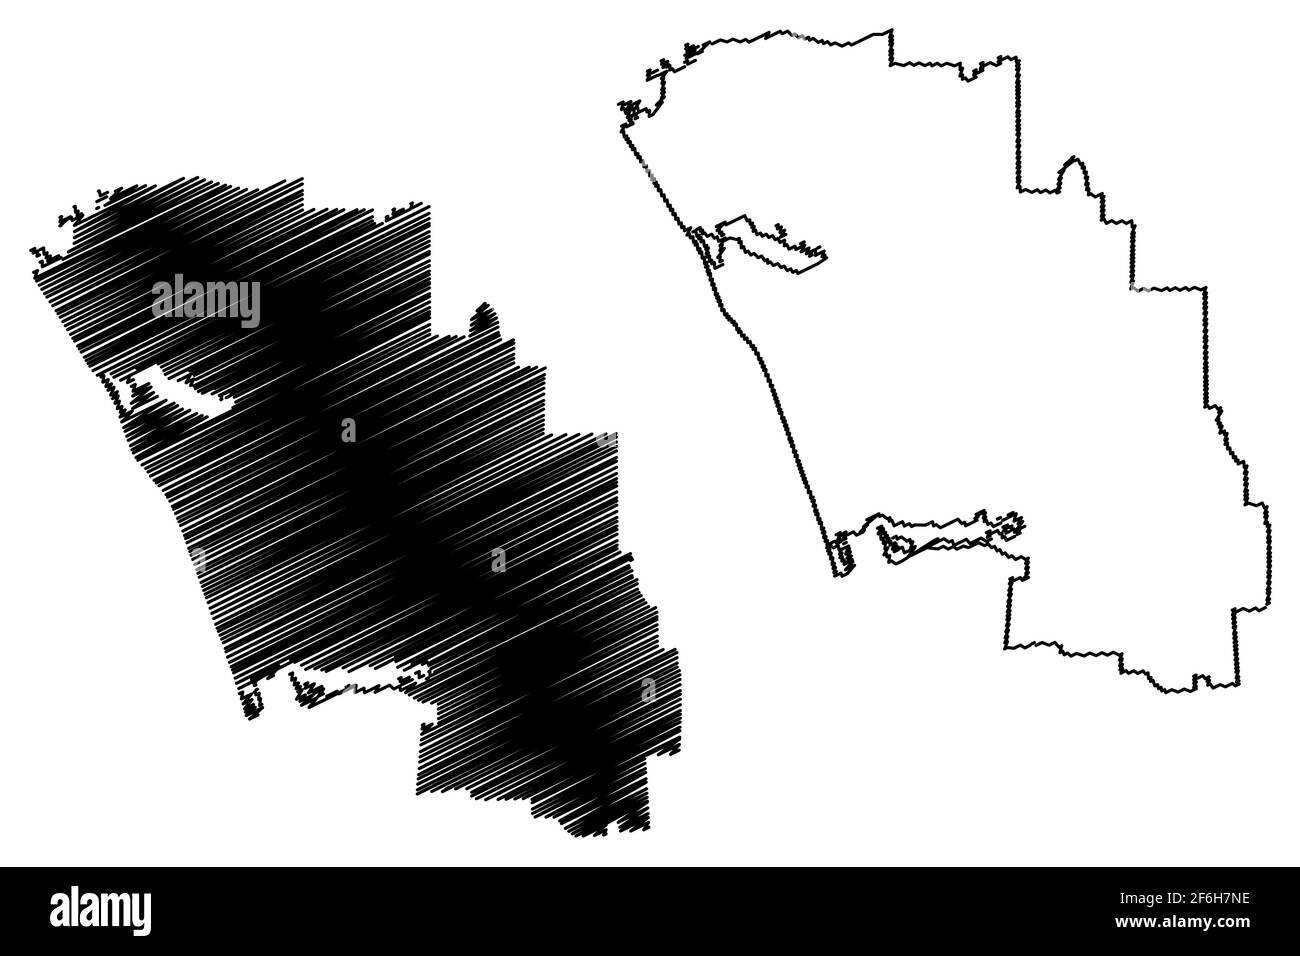 Carlsbad City, Californie (villes des États-Unis, États-Unis d'Amérique, ville des états-unis) carte illustration vectorielle, scribble sketch carte de la ville de Carlsbad Illustration de Vecteur